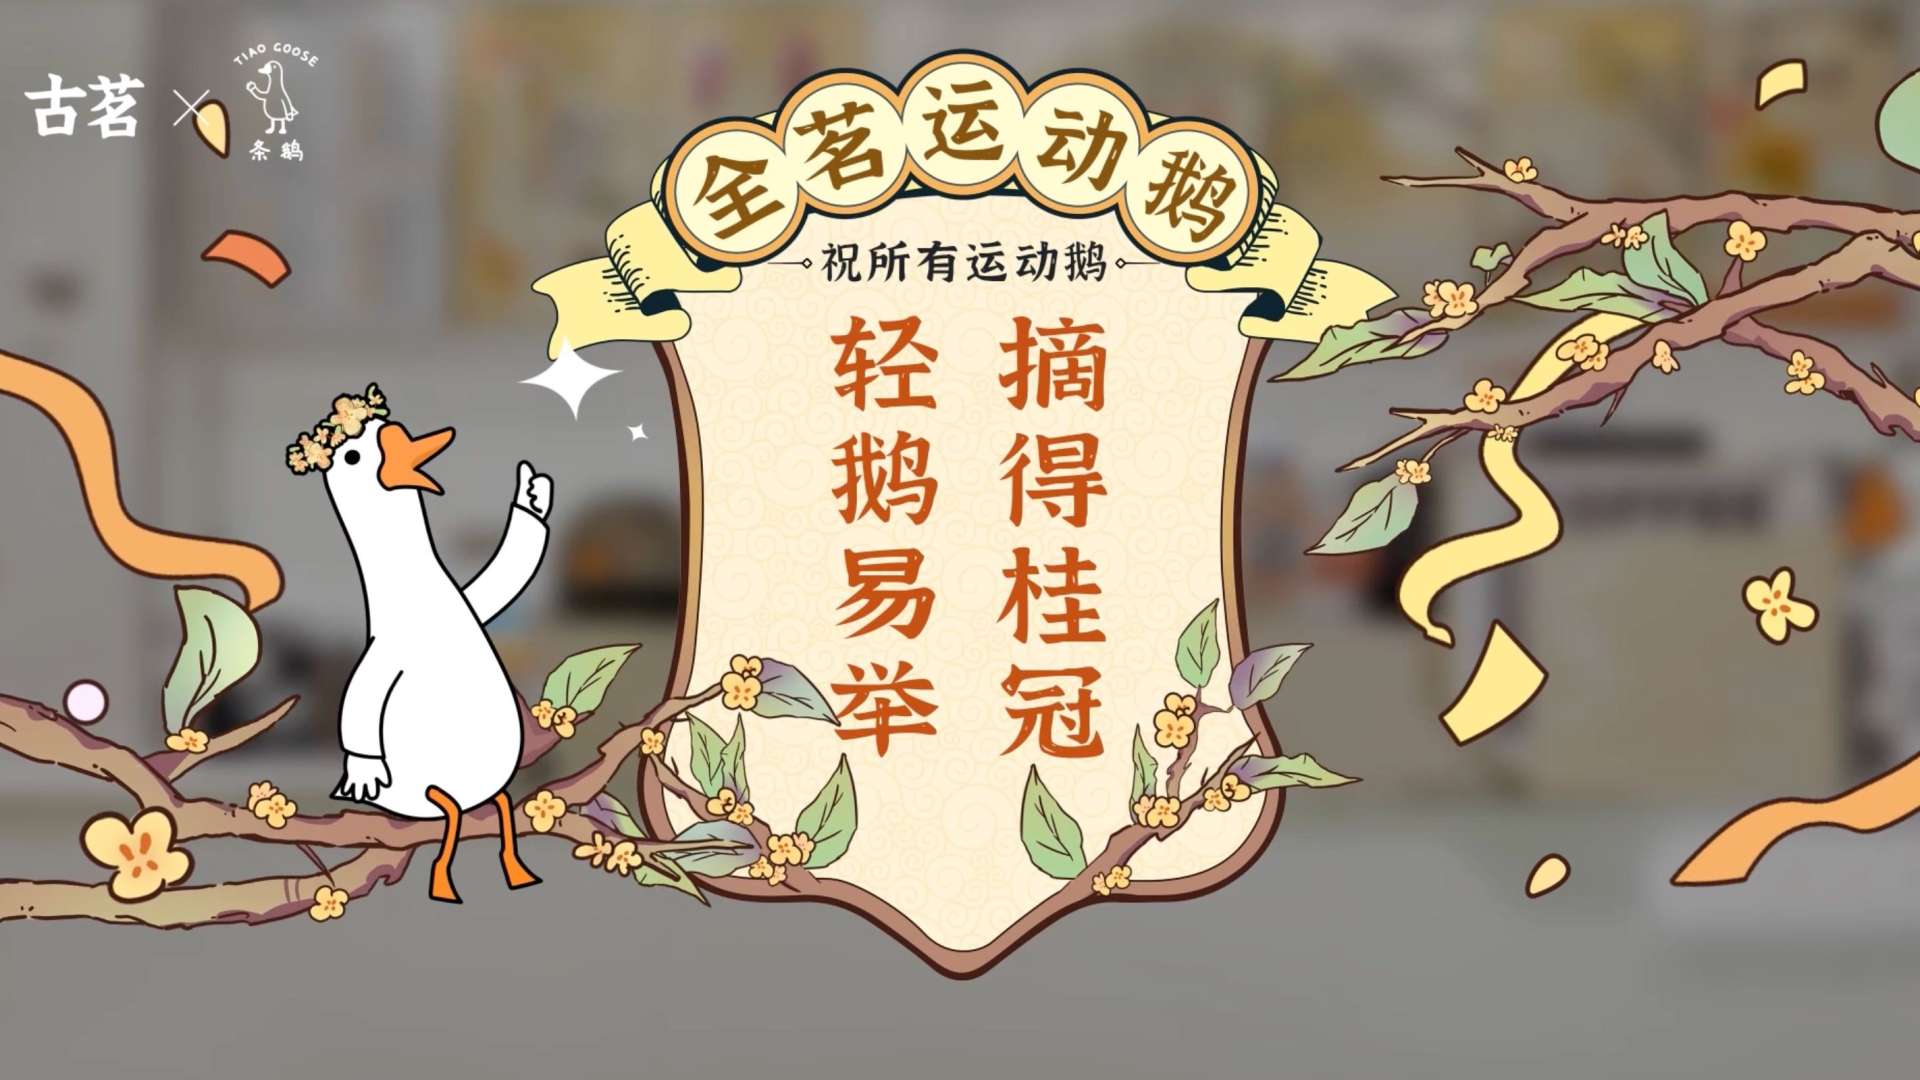 古茗《全茗运动鹅》动画广告：轻“鹅”易举！“饮”以为荣！